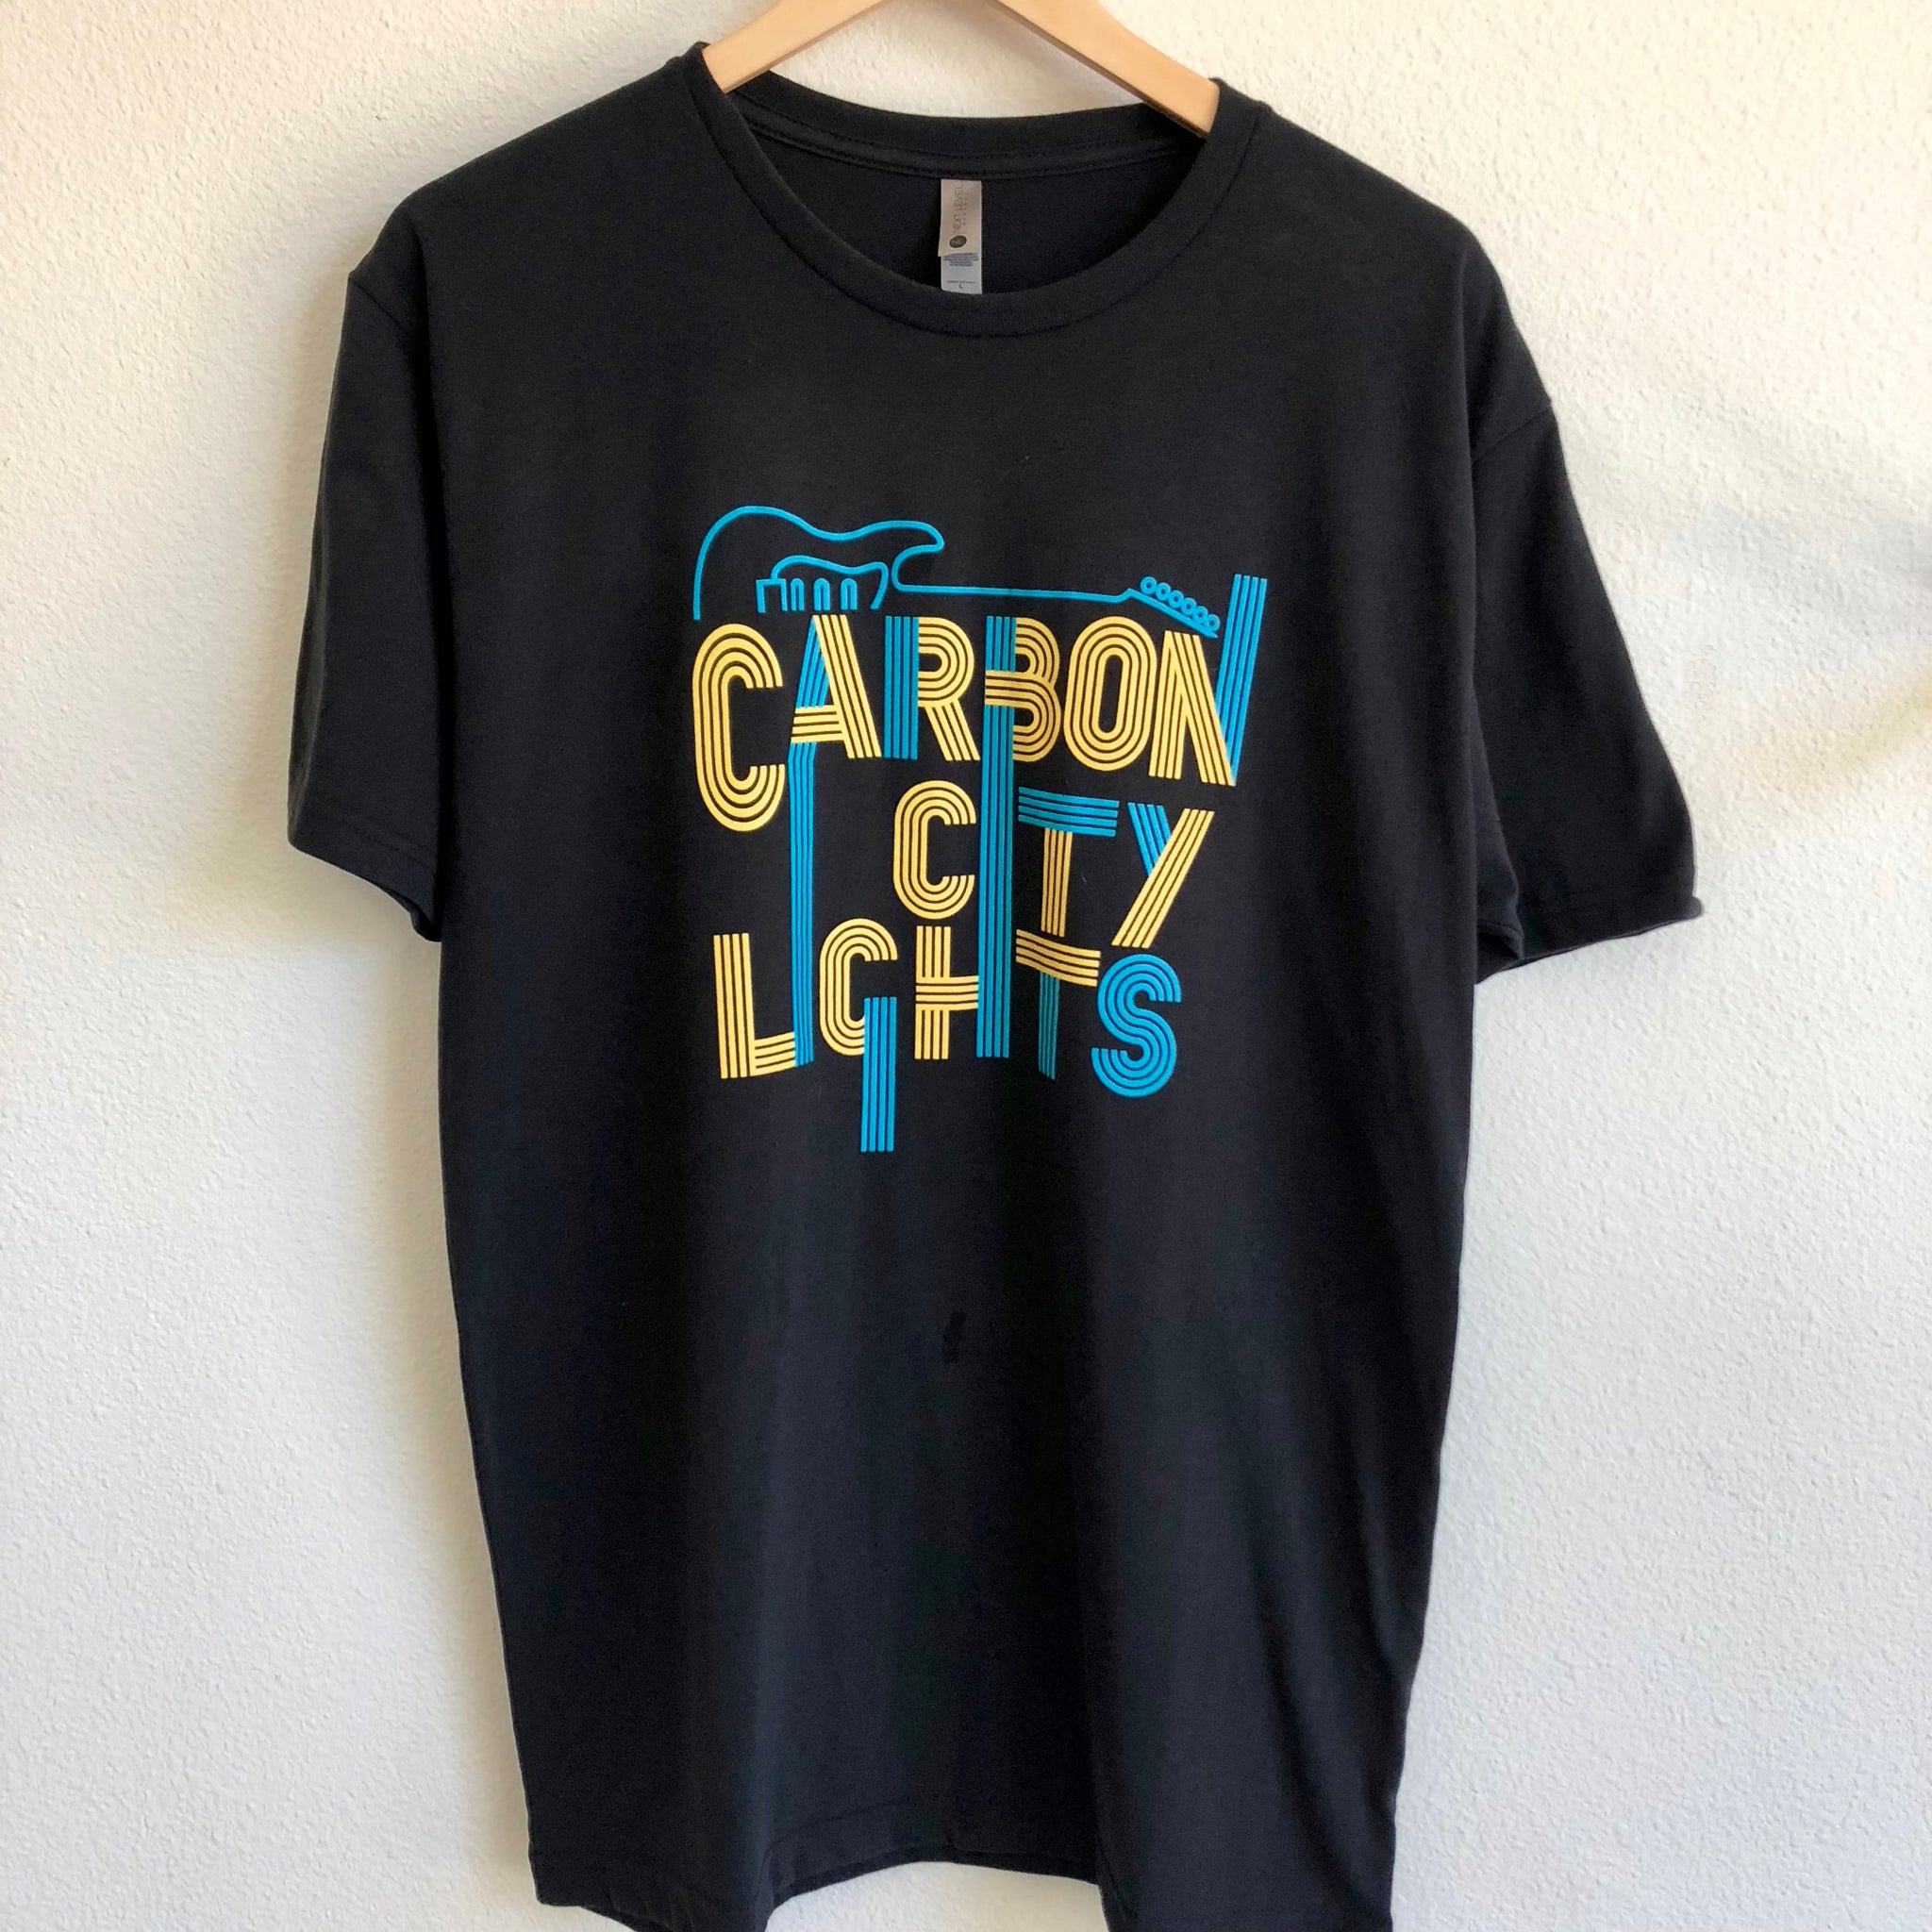 Men's Black T-Shirt - Carbon City Lights